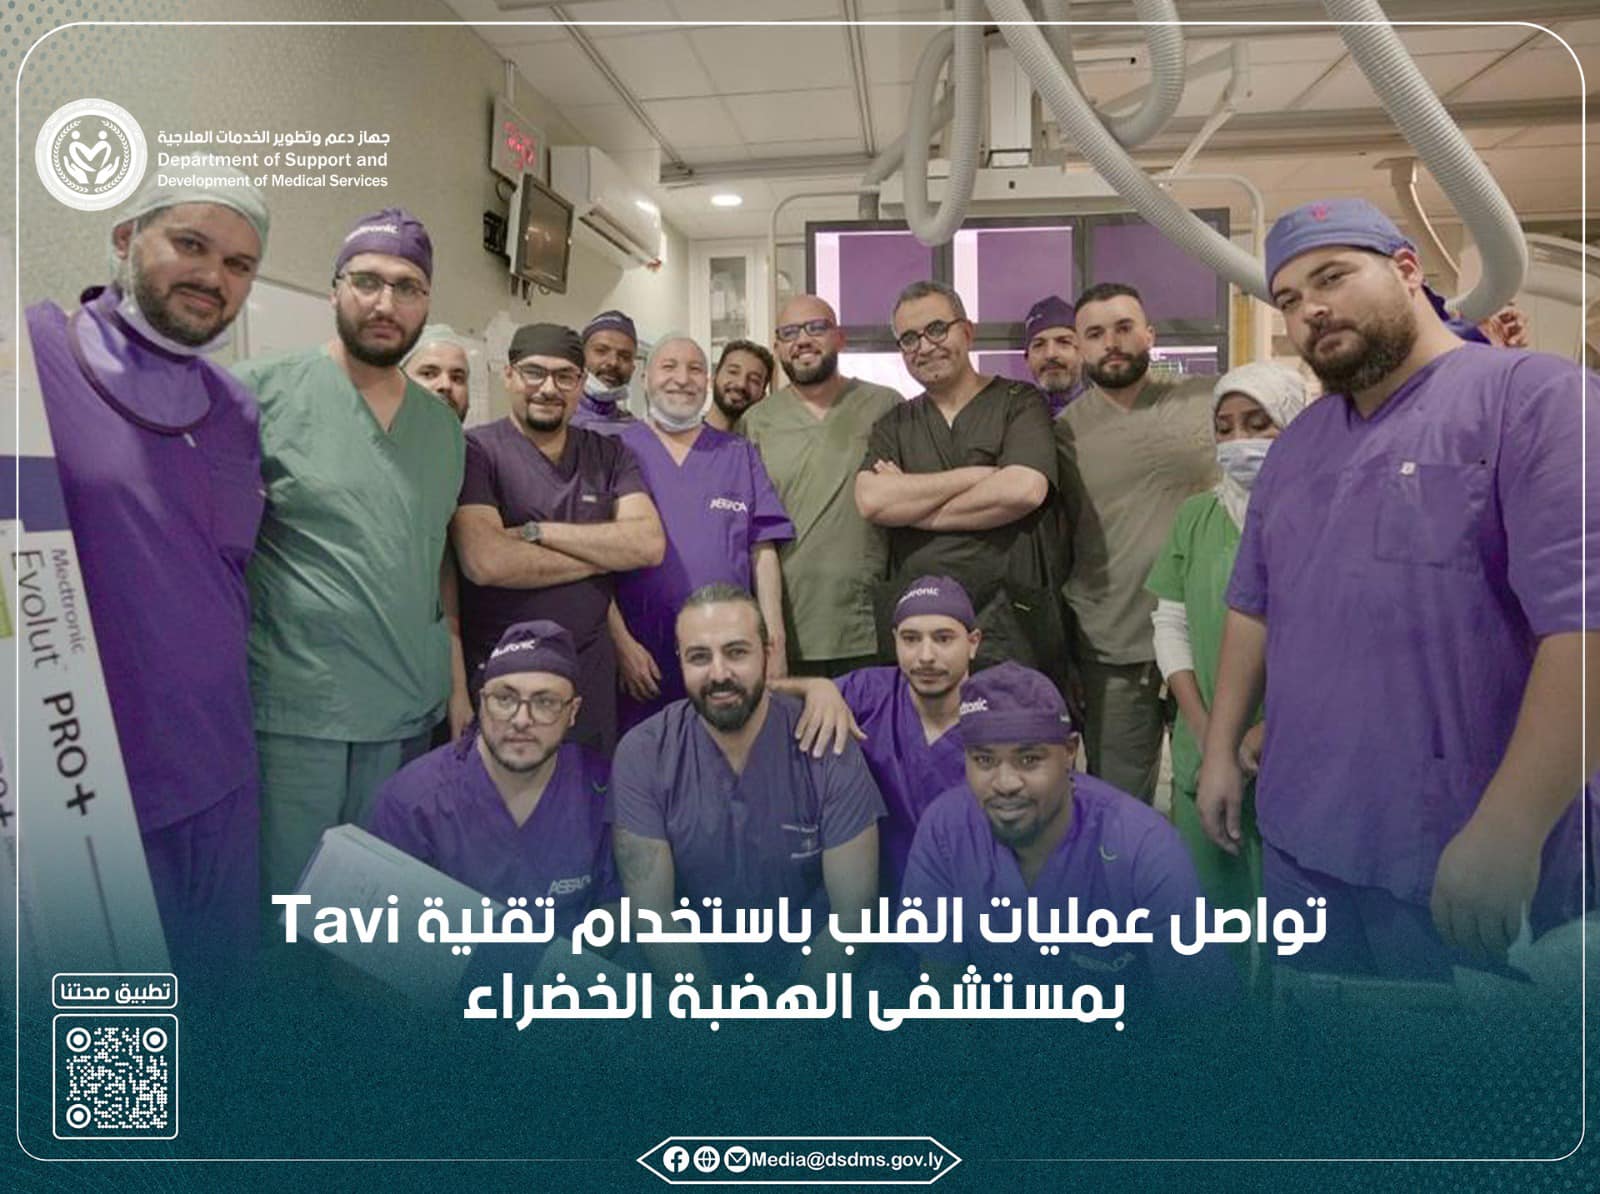 استمرار  عمليات القلب باستخدام تقنية Tavi بمستشفى الهضبة الخضراء بطرابلس   .